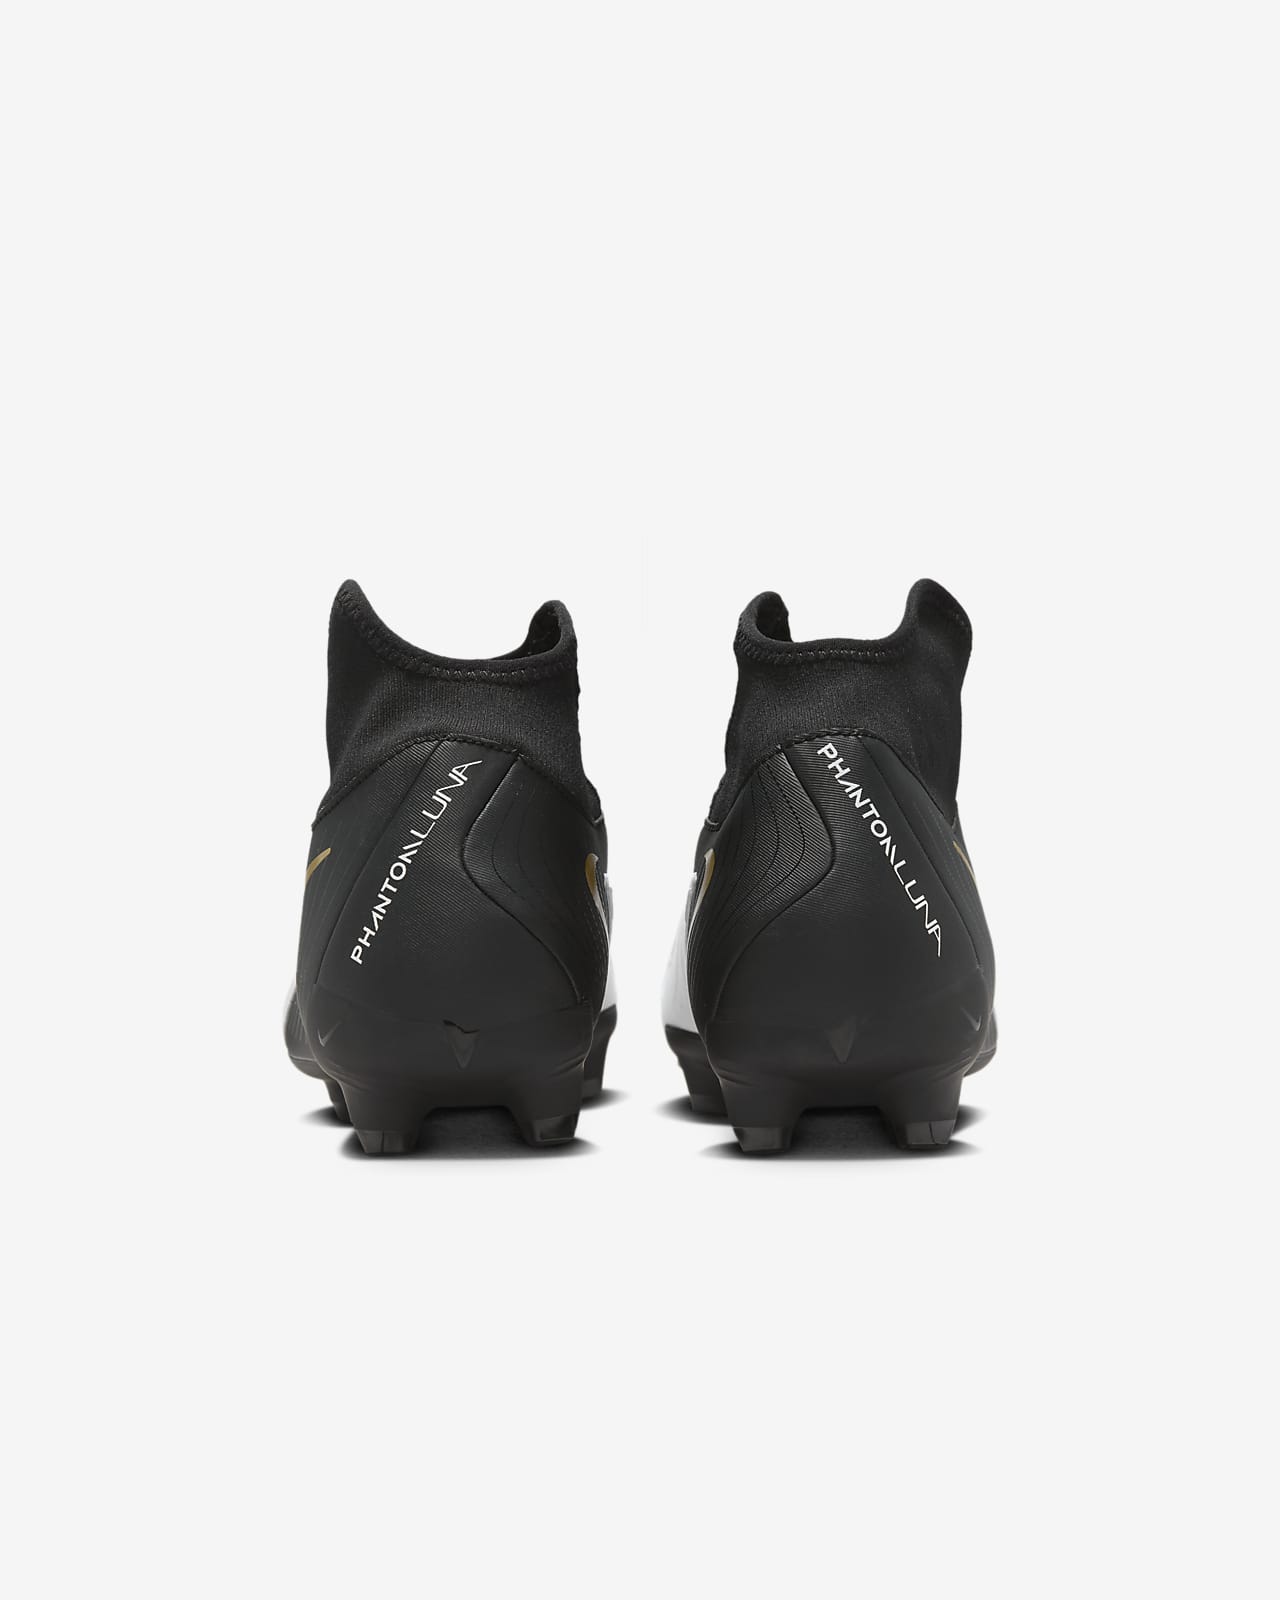 Nike presenta Phantom Luna: la scarpa da calcio pensata per lei frutto di  anni di studio e innovazione - Calcio femminile italiano